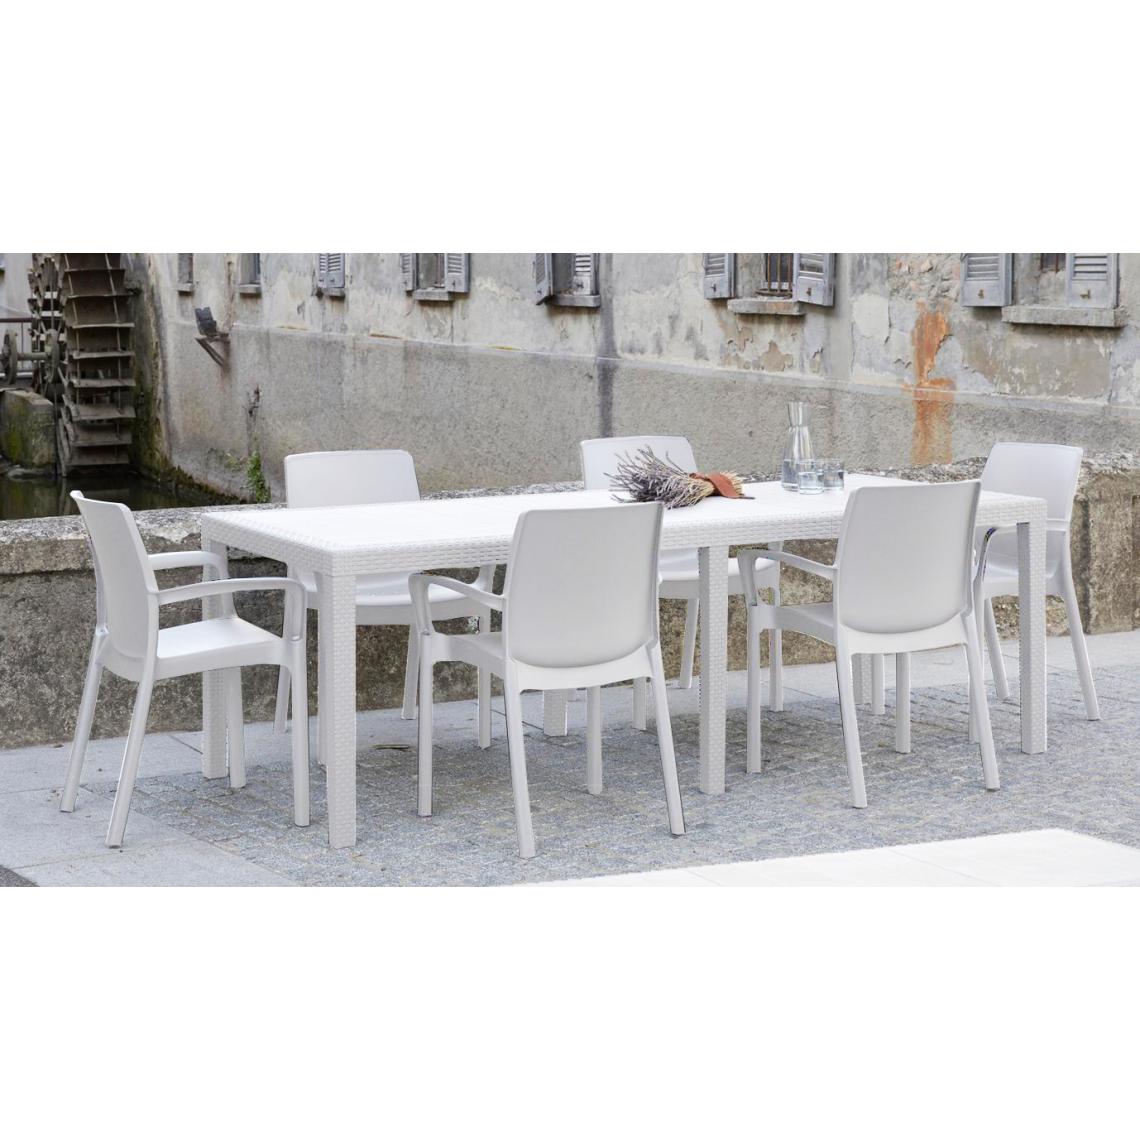 Alter - Table d'extérieur rectangulaire extensible, Made in Italy, couleur blanche, Dimensions 150 x 72 x 90 cm (extensible jusqu'à 220 cm) - Tables à manger